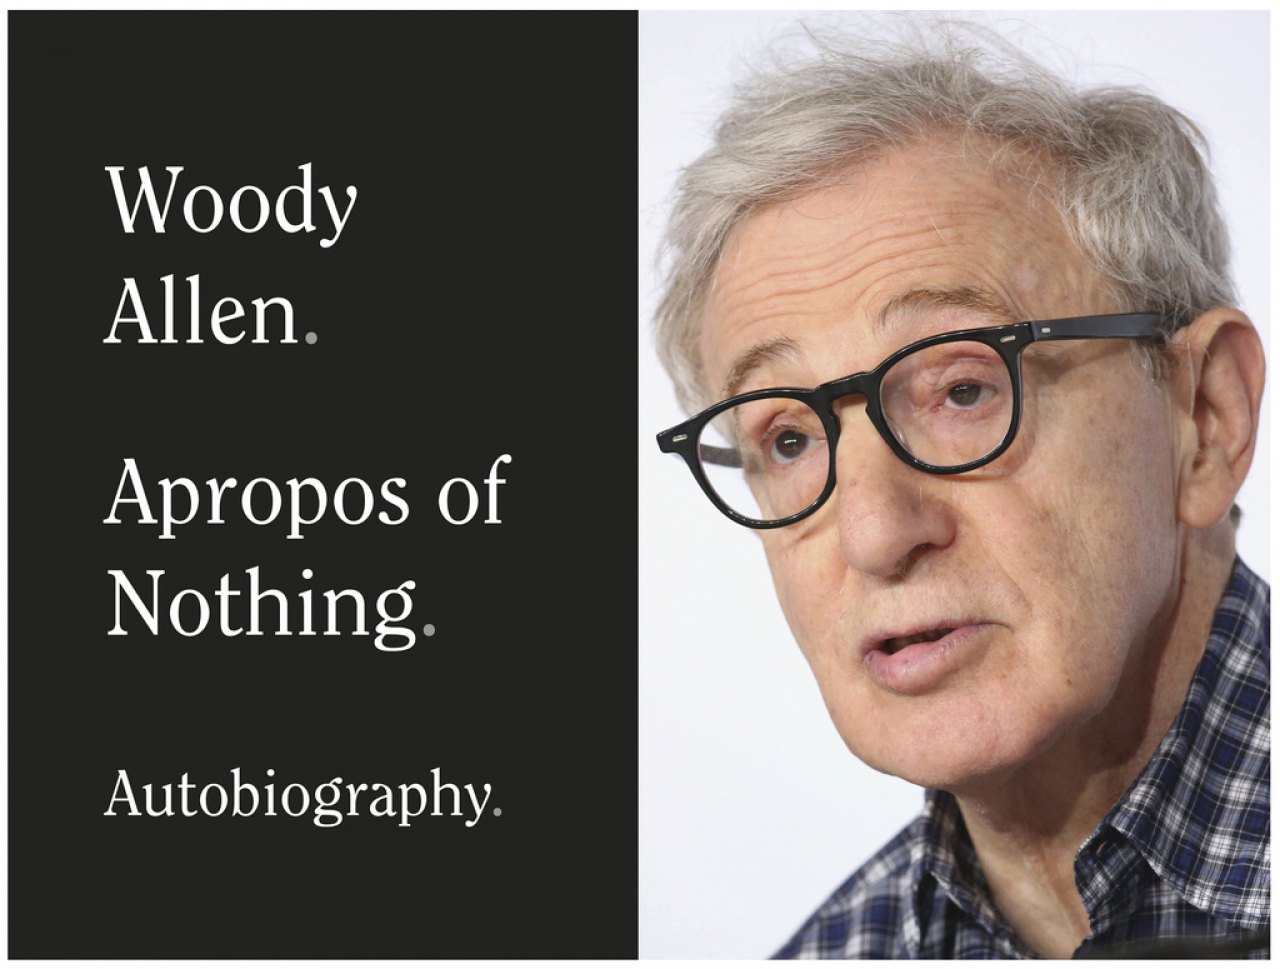 La polemica ferma l'autobiografia di Woody Allen - Ticinonline